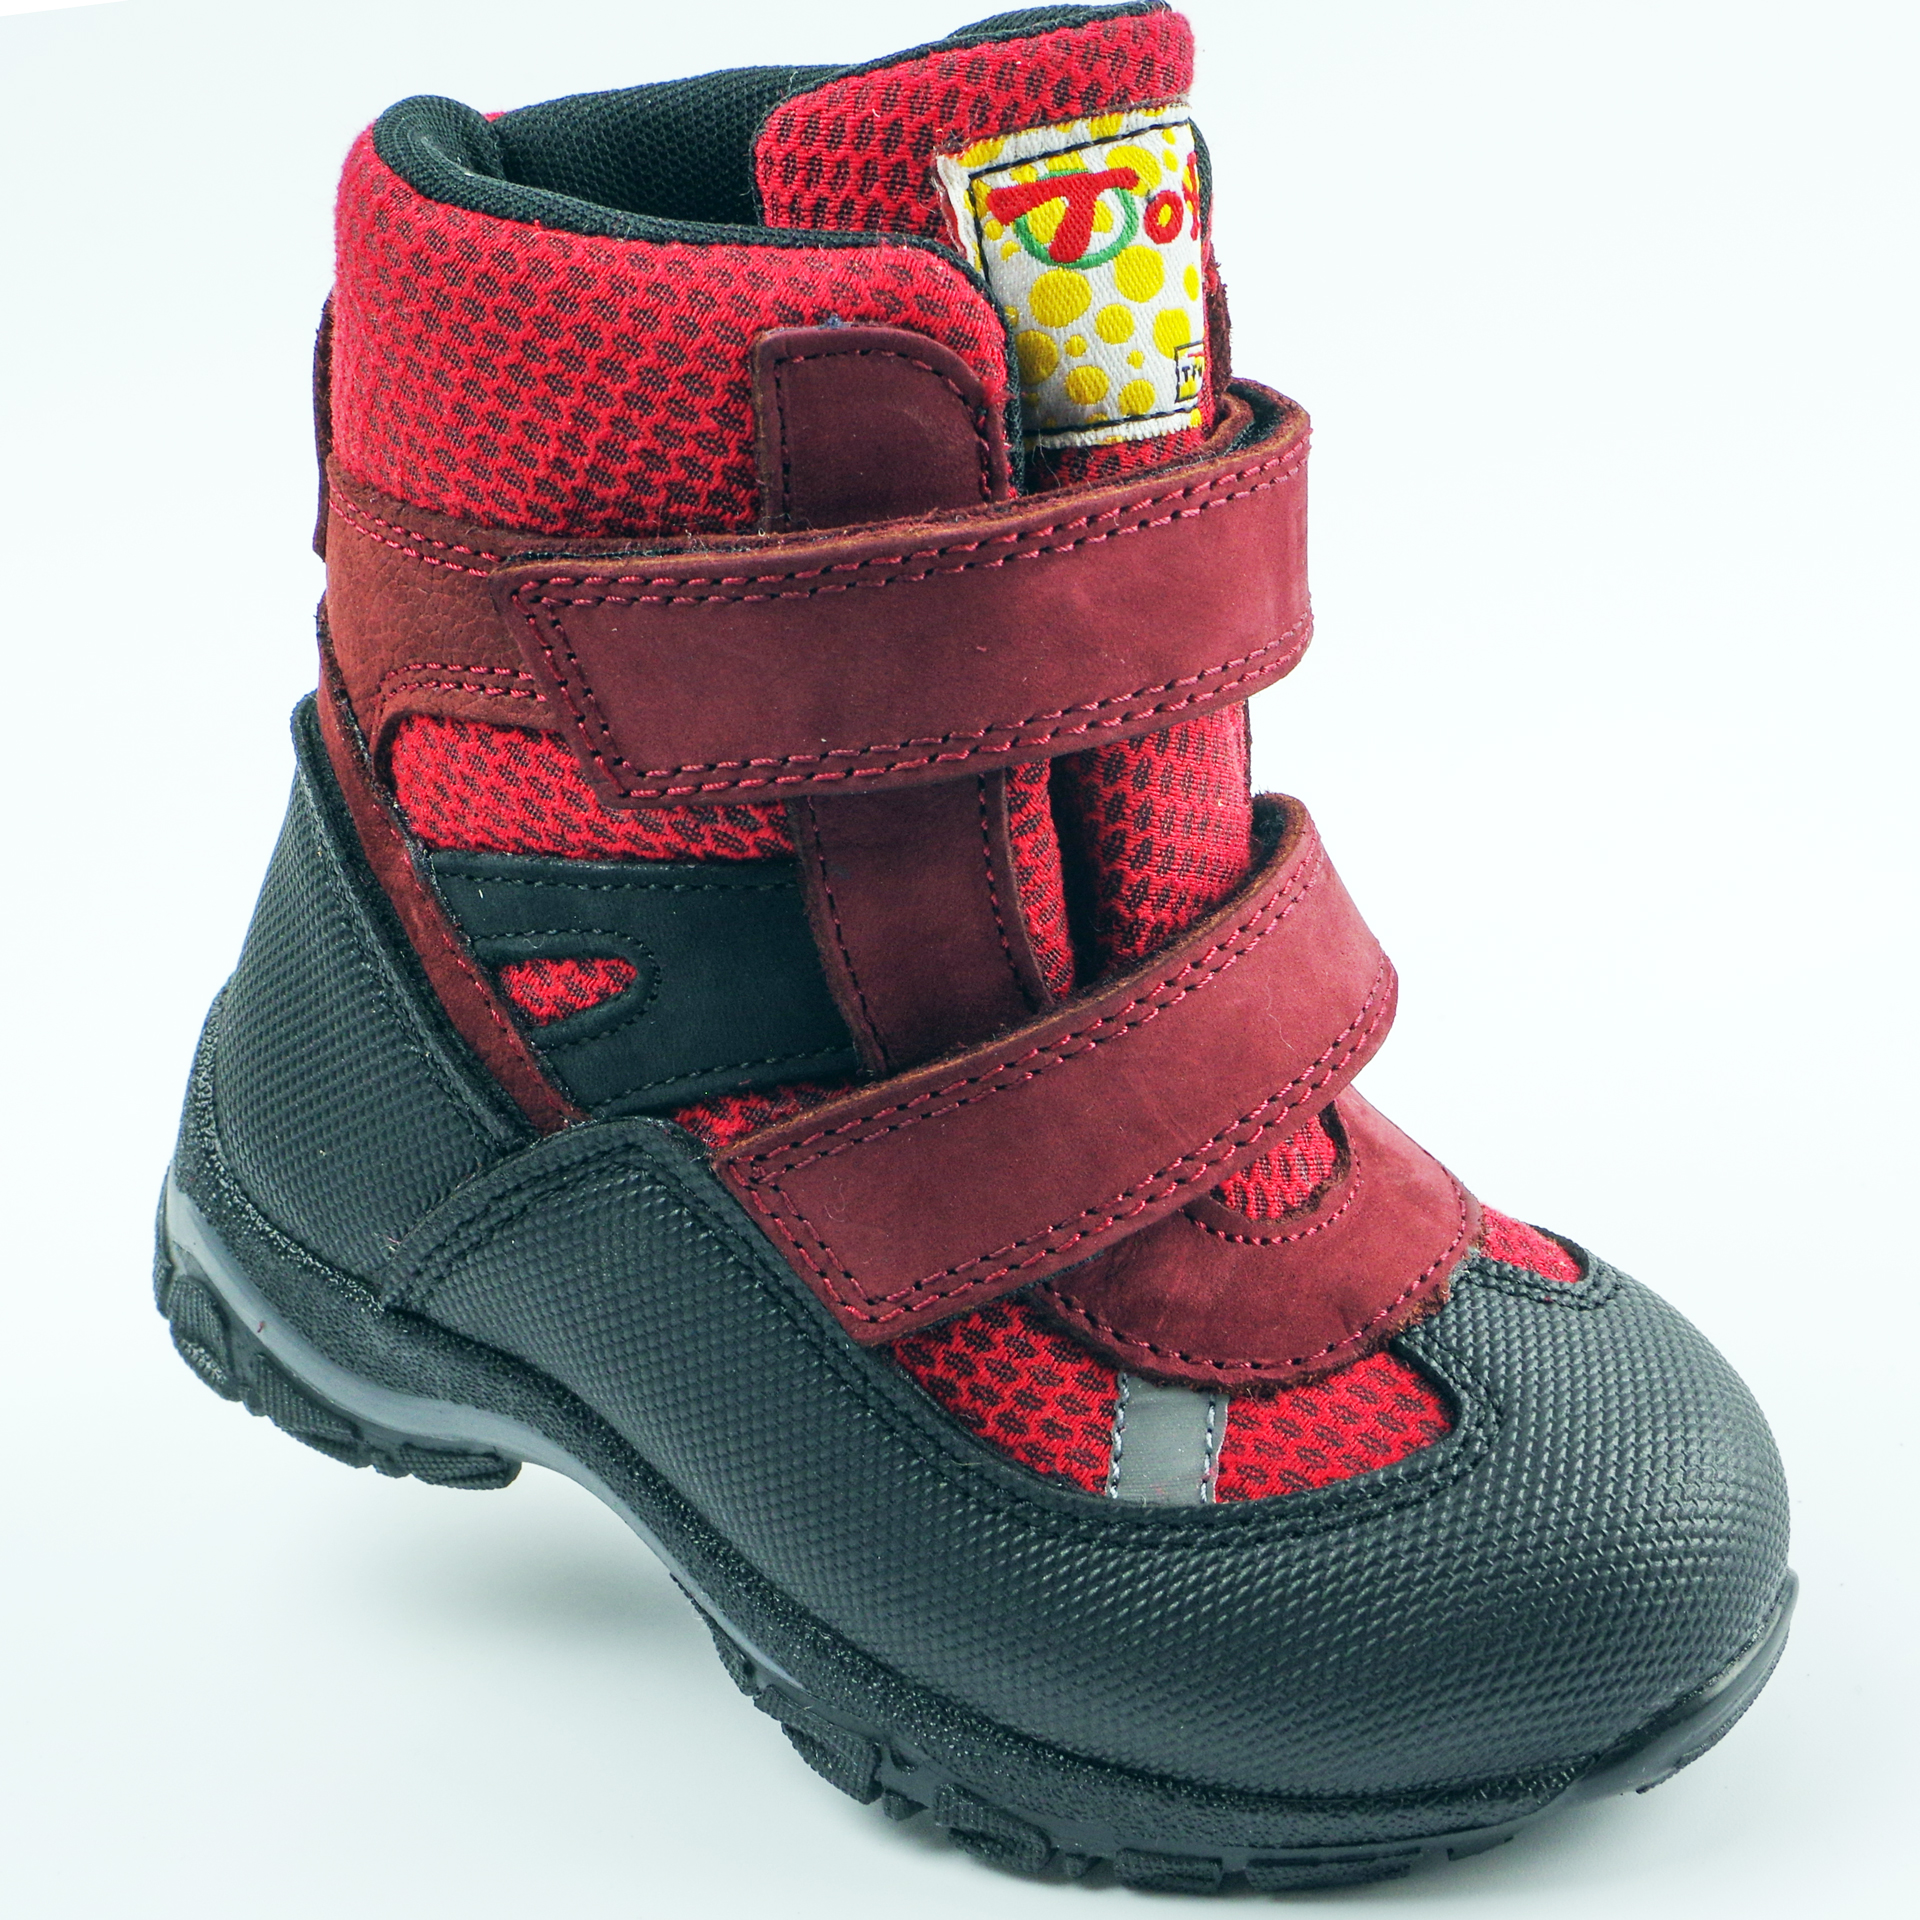 Мембранні зимові черевики (2145) для дівчинки, матеріал Мембрана, Червоний колір, 22-25 розміри – Sole Kids. Фото 1